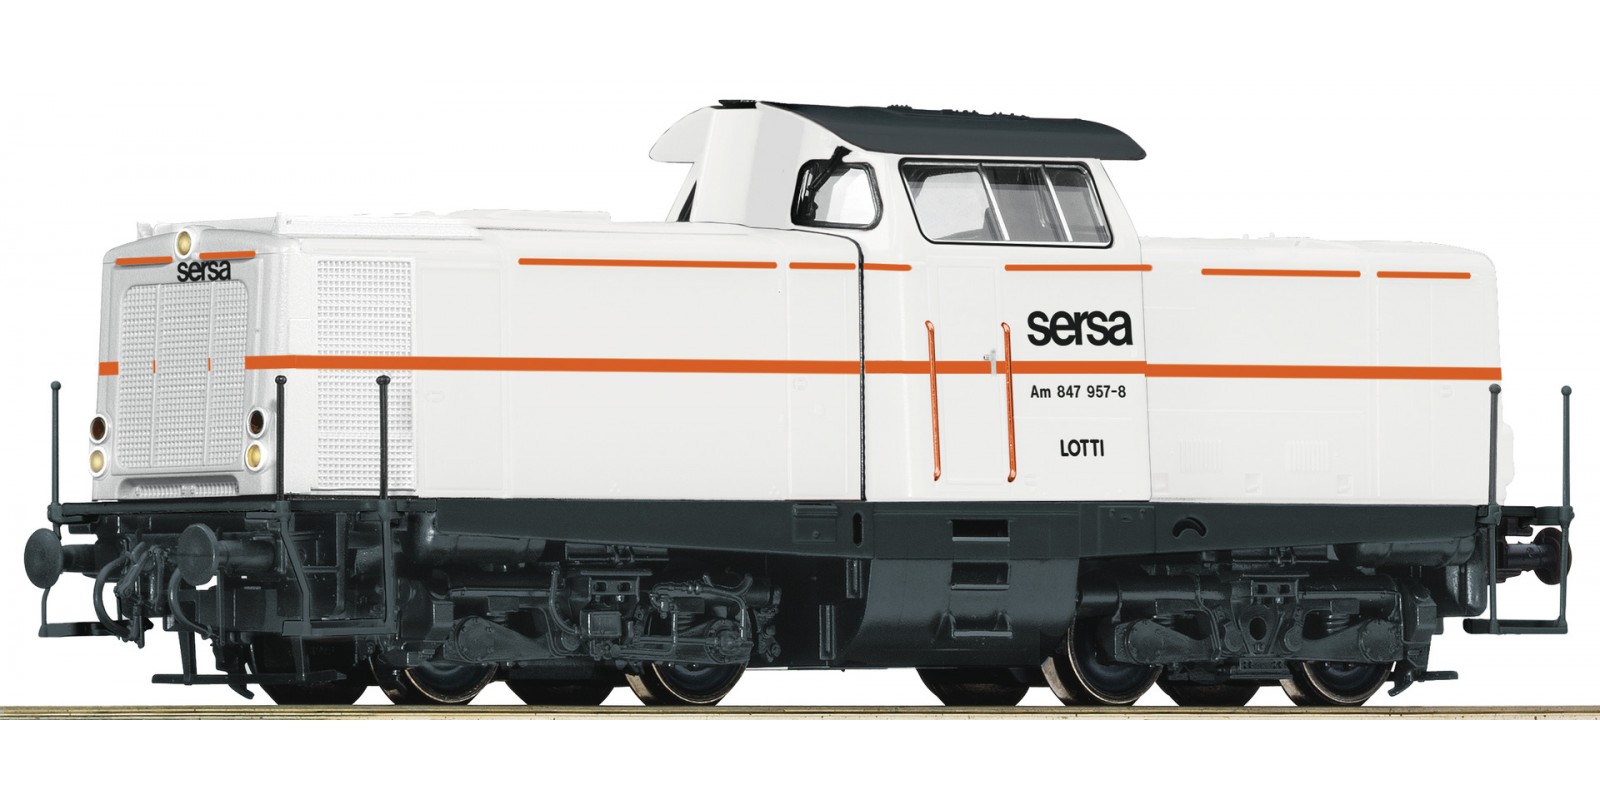 RO58566 Diesel locomotive Am 847 957-8, SERSA